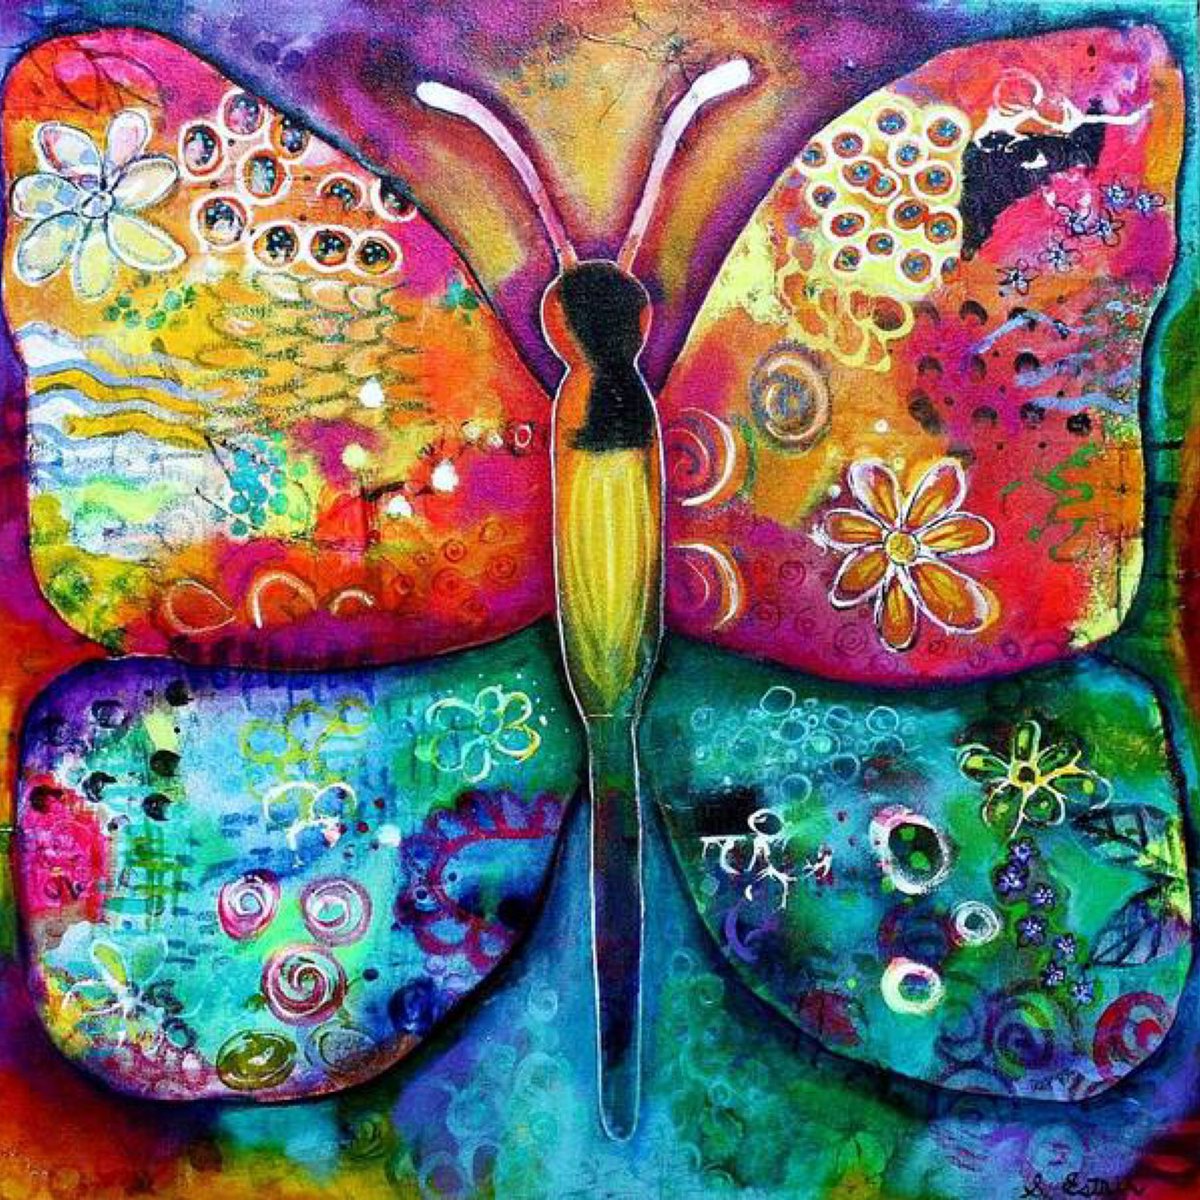 #NewMoon fly on wings of joy into fields of vivid peace soar free without fear  #haiku 🎨Psychedelic Butterfly Artist: Stephanie Estrin